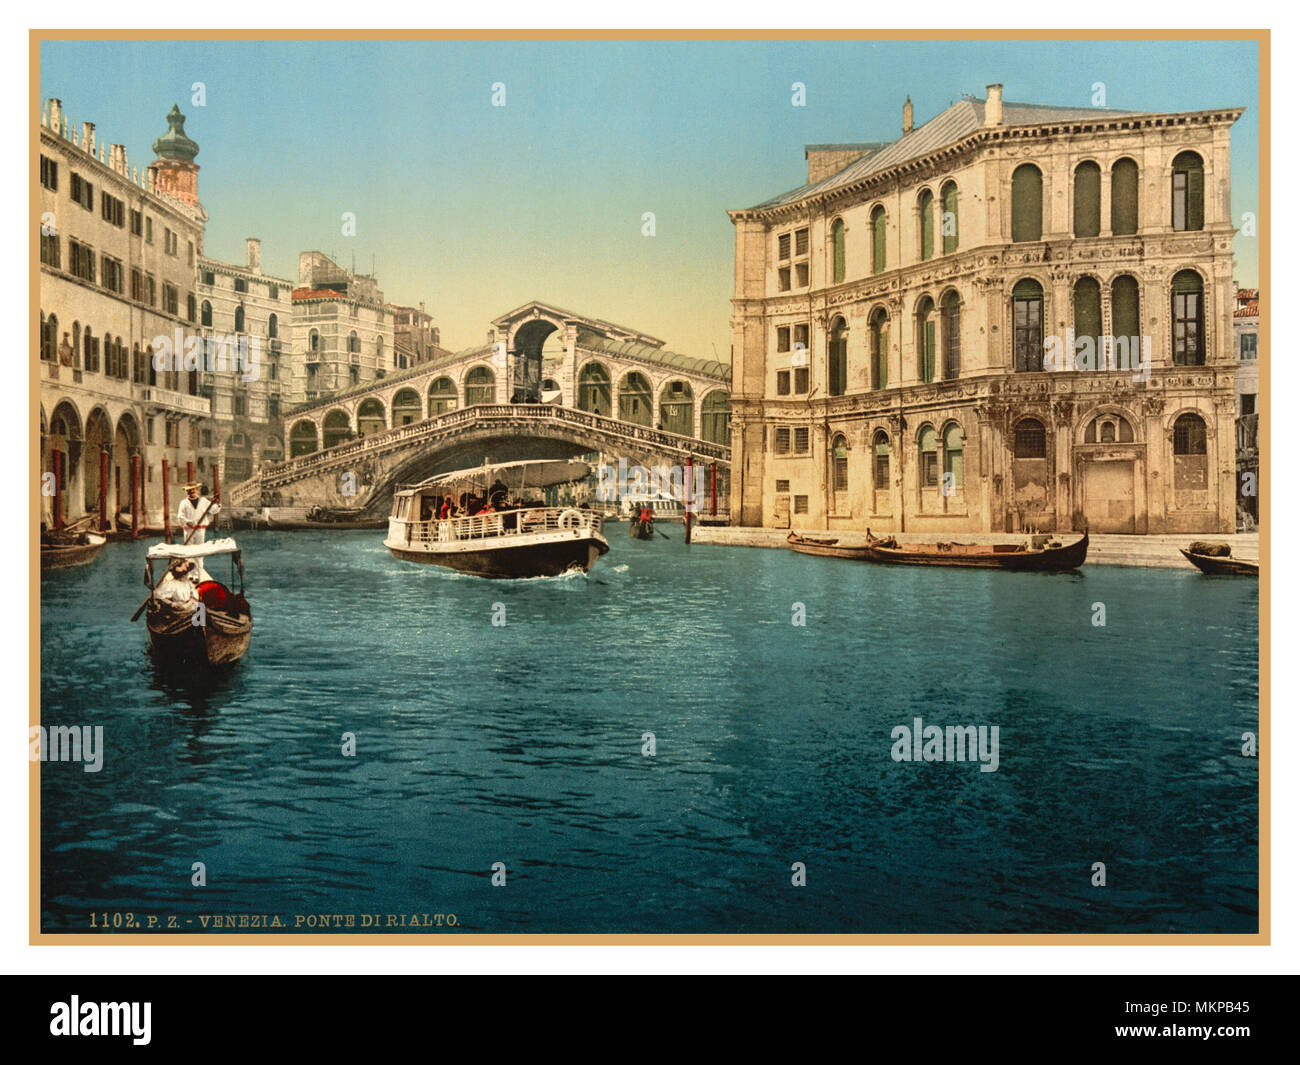 Rialto-brücke VENEDIG Vintage Altstadt von Venedig 1890 -1900 Photochrom Blick auf die Rialto Brücke über den Canal Grande, mit Gondolieri Wassertaxi Vaporetto die Besucher an ihren Bestimmungsort Pier Stockfoto